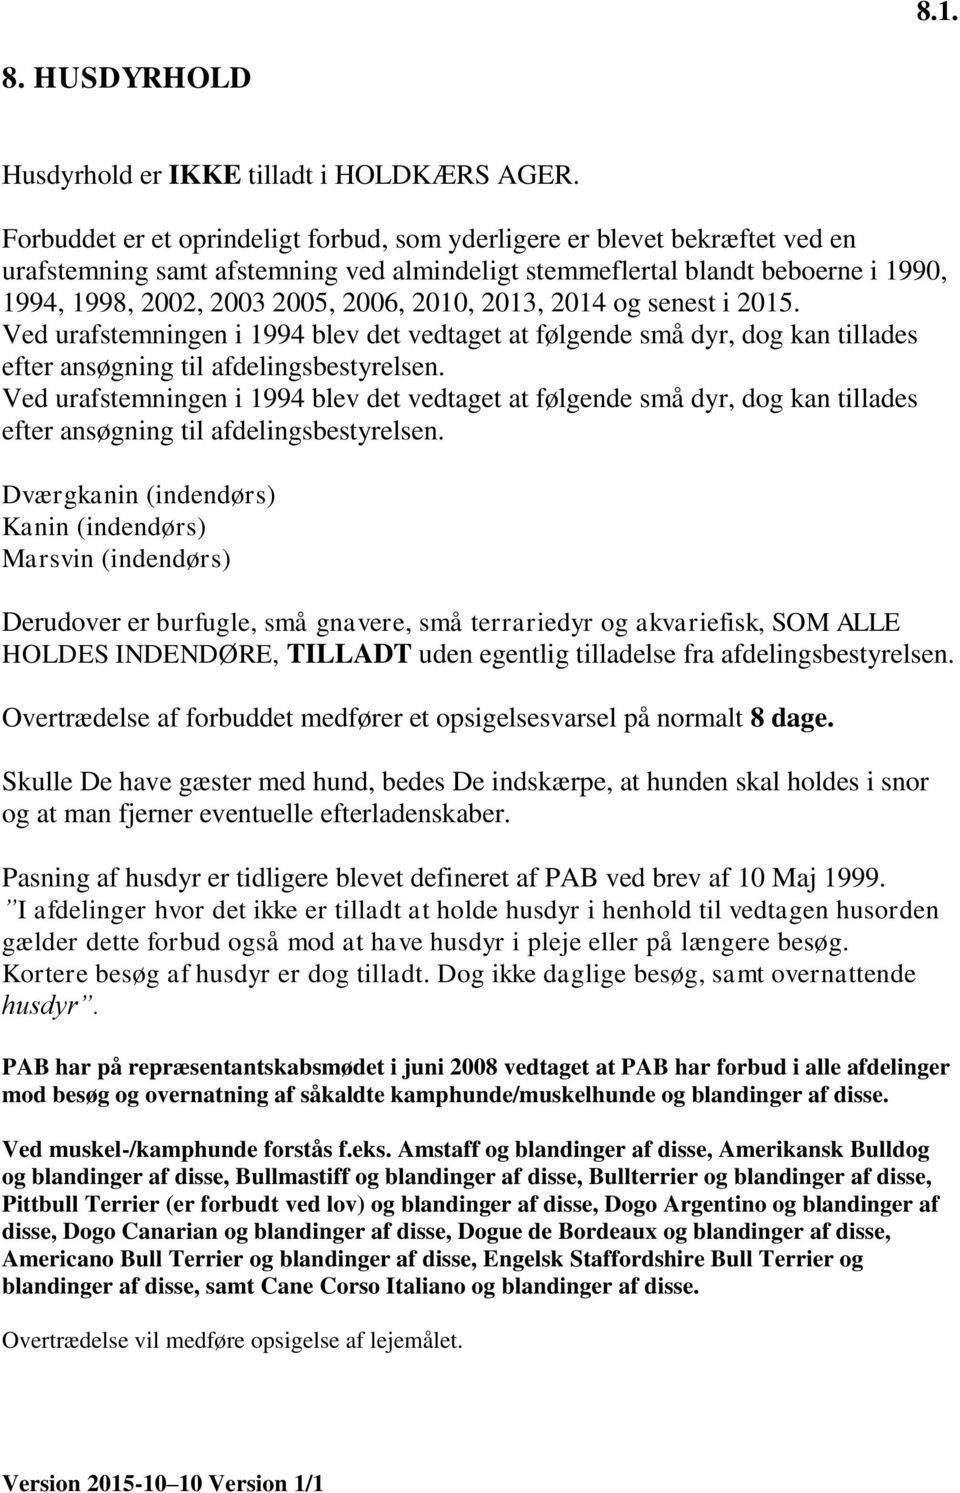 PAB Holdkærs Ager BEBOERMAPPE. Indhold. Afdelingsbestyrelsen  Administration/Hovedbestyrelse. Generelle ordensregler. Version Version 1/1  - PDF Free Download